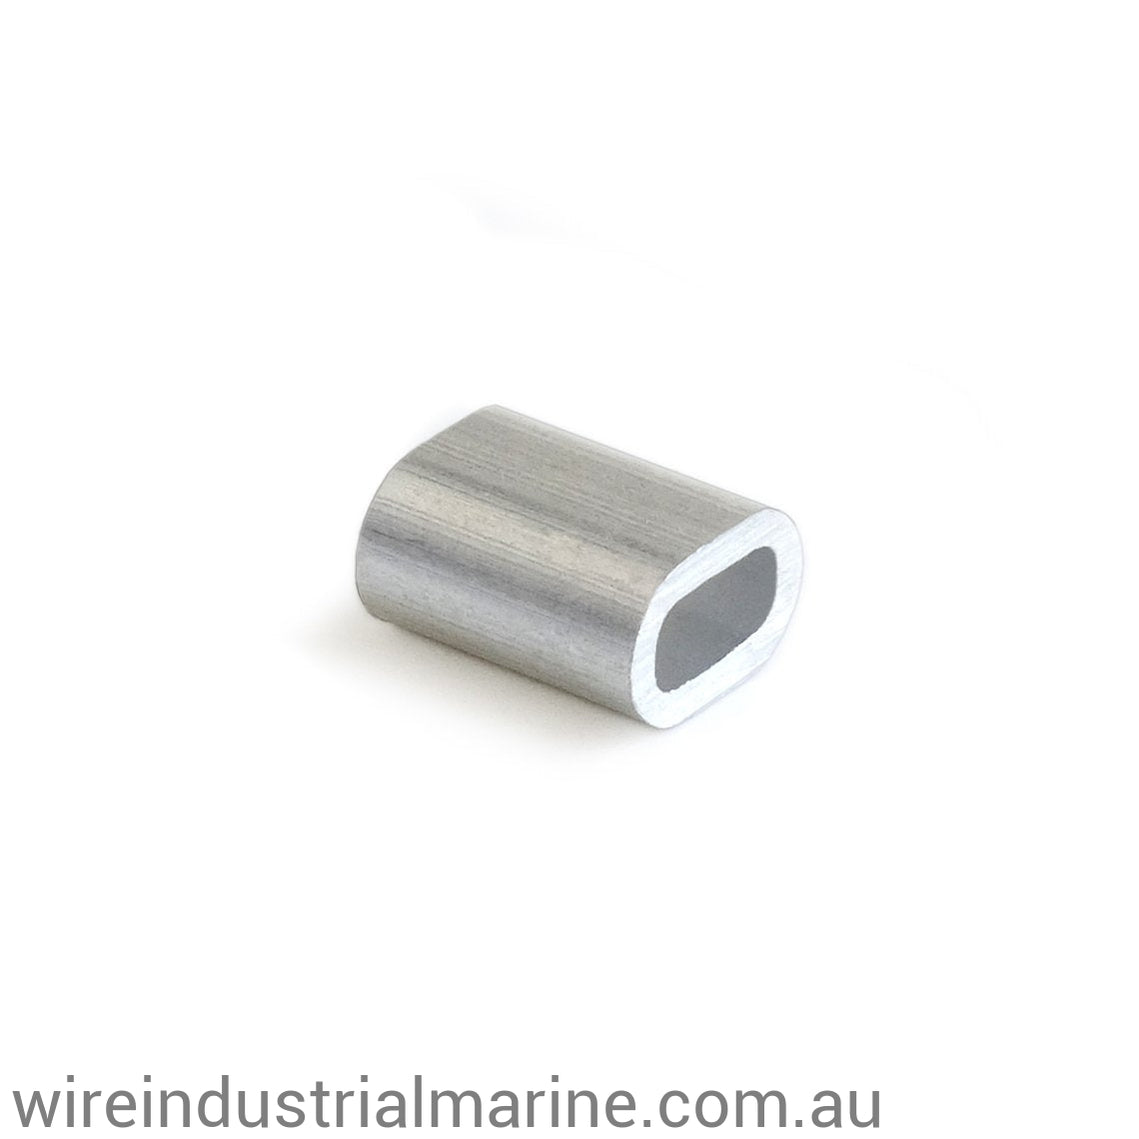 1.5mm ALLOY-DIN Code machine press ferrule for galvanised wire-wireindustrialmarine